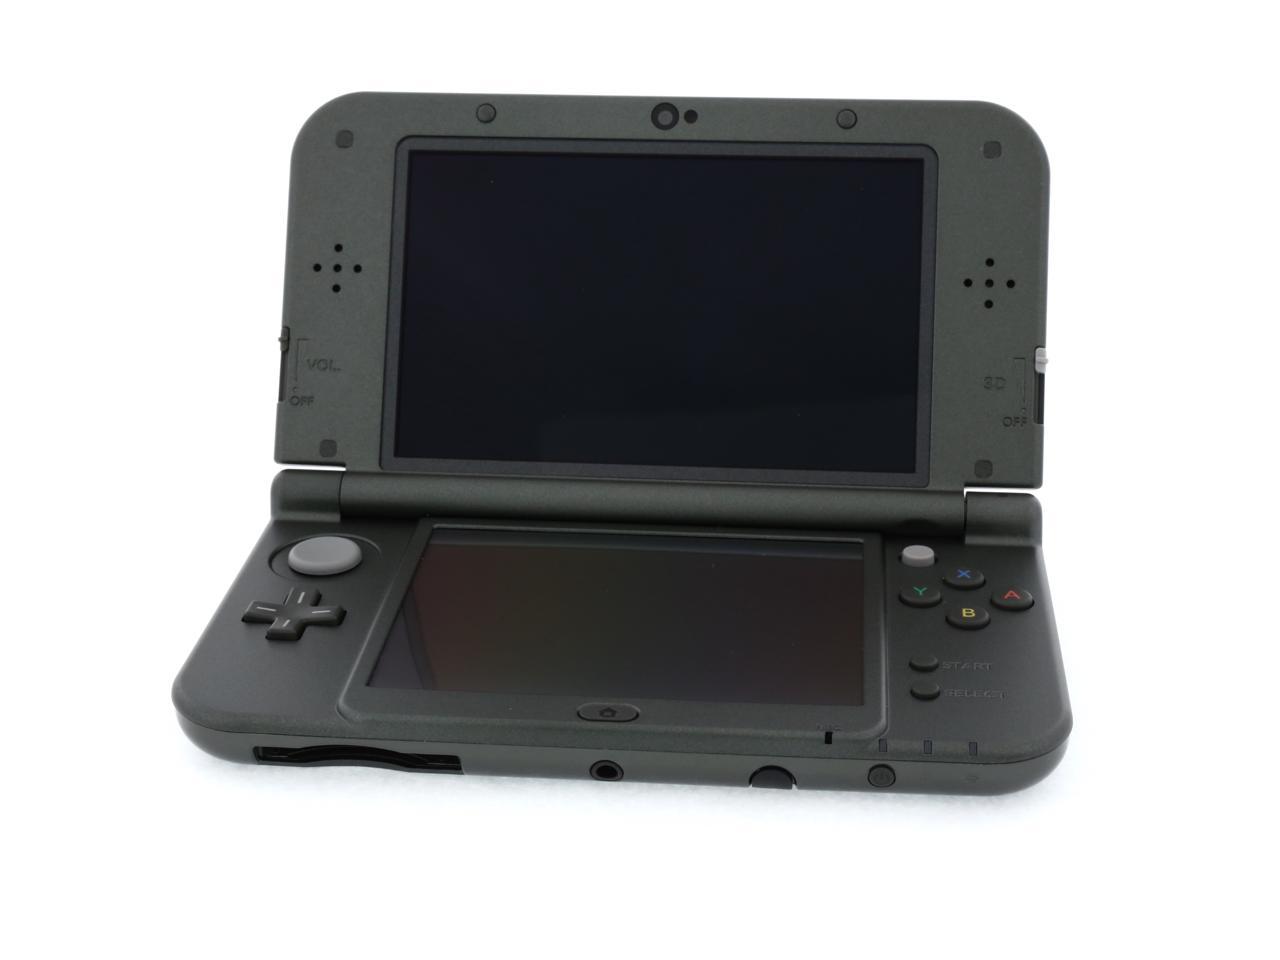 Nintendo New 3DS XL - Black - Newegg.com